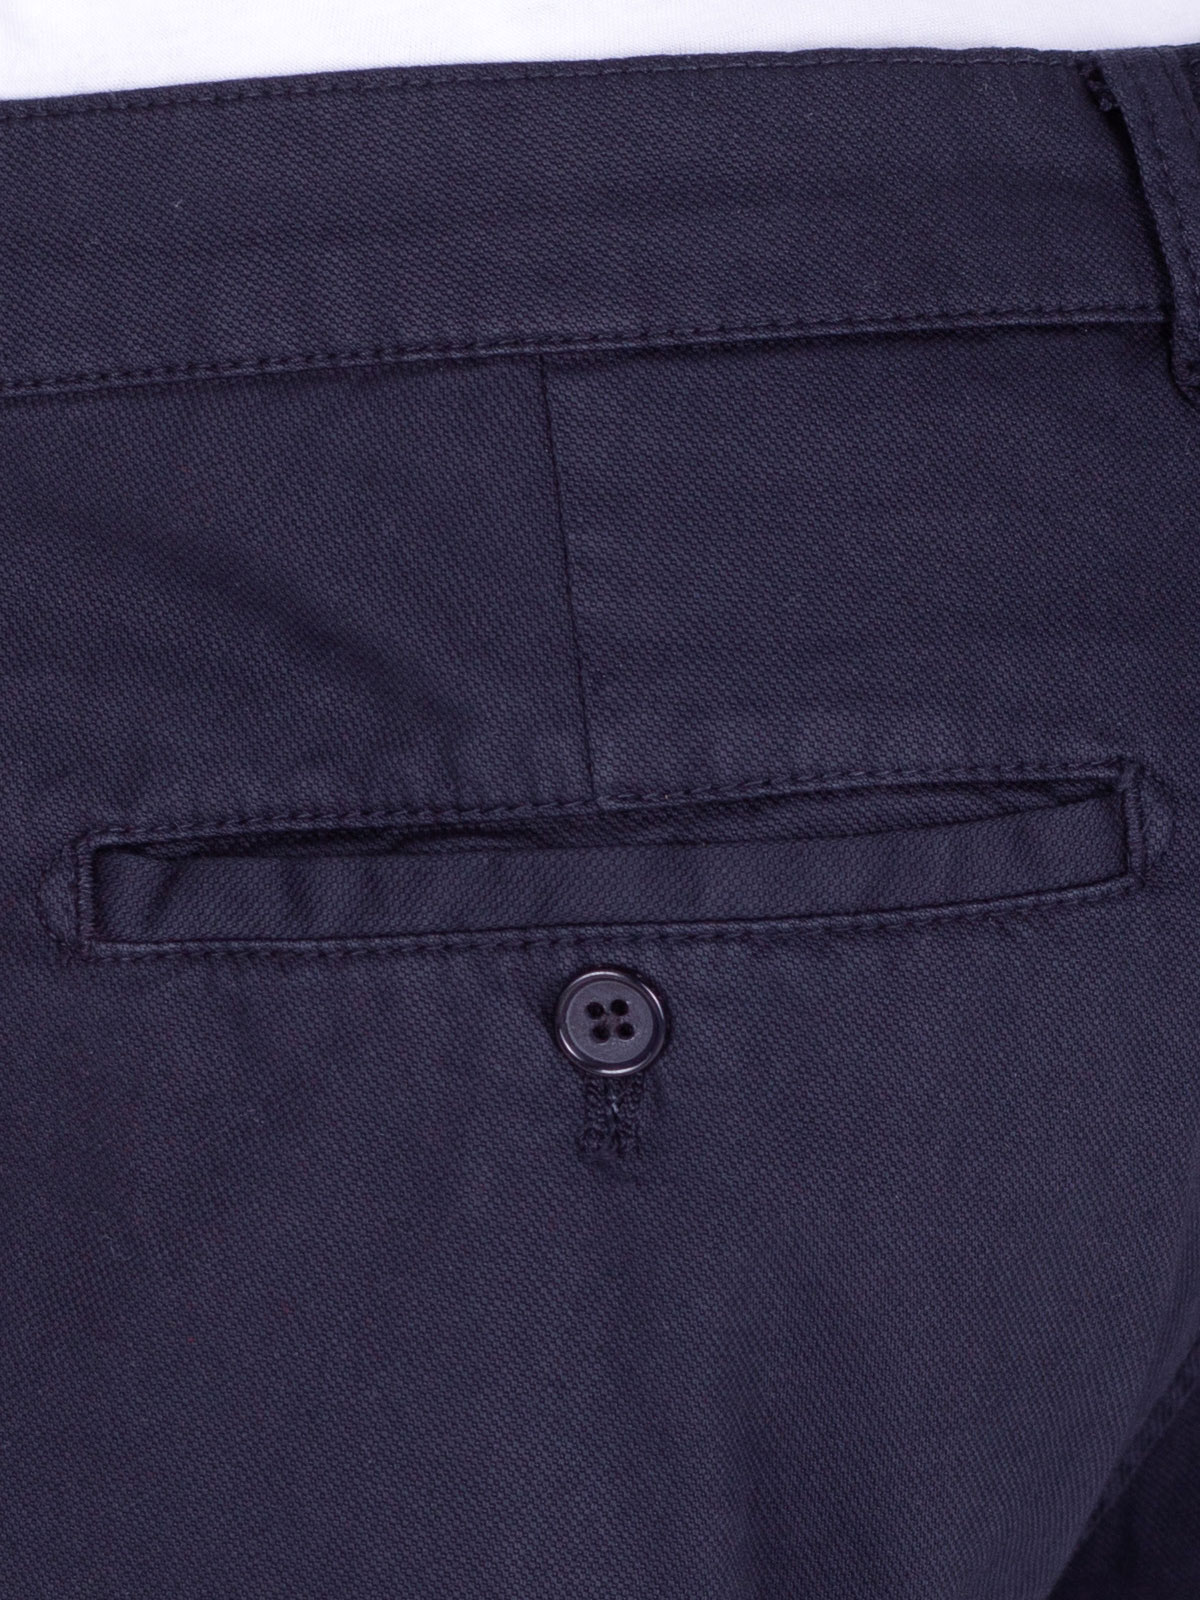 Структуриран панталон в тъмно синьо - 60280 109.00 лв img4